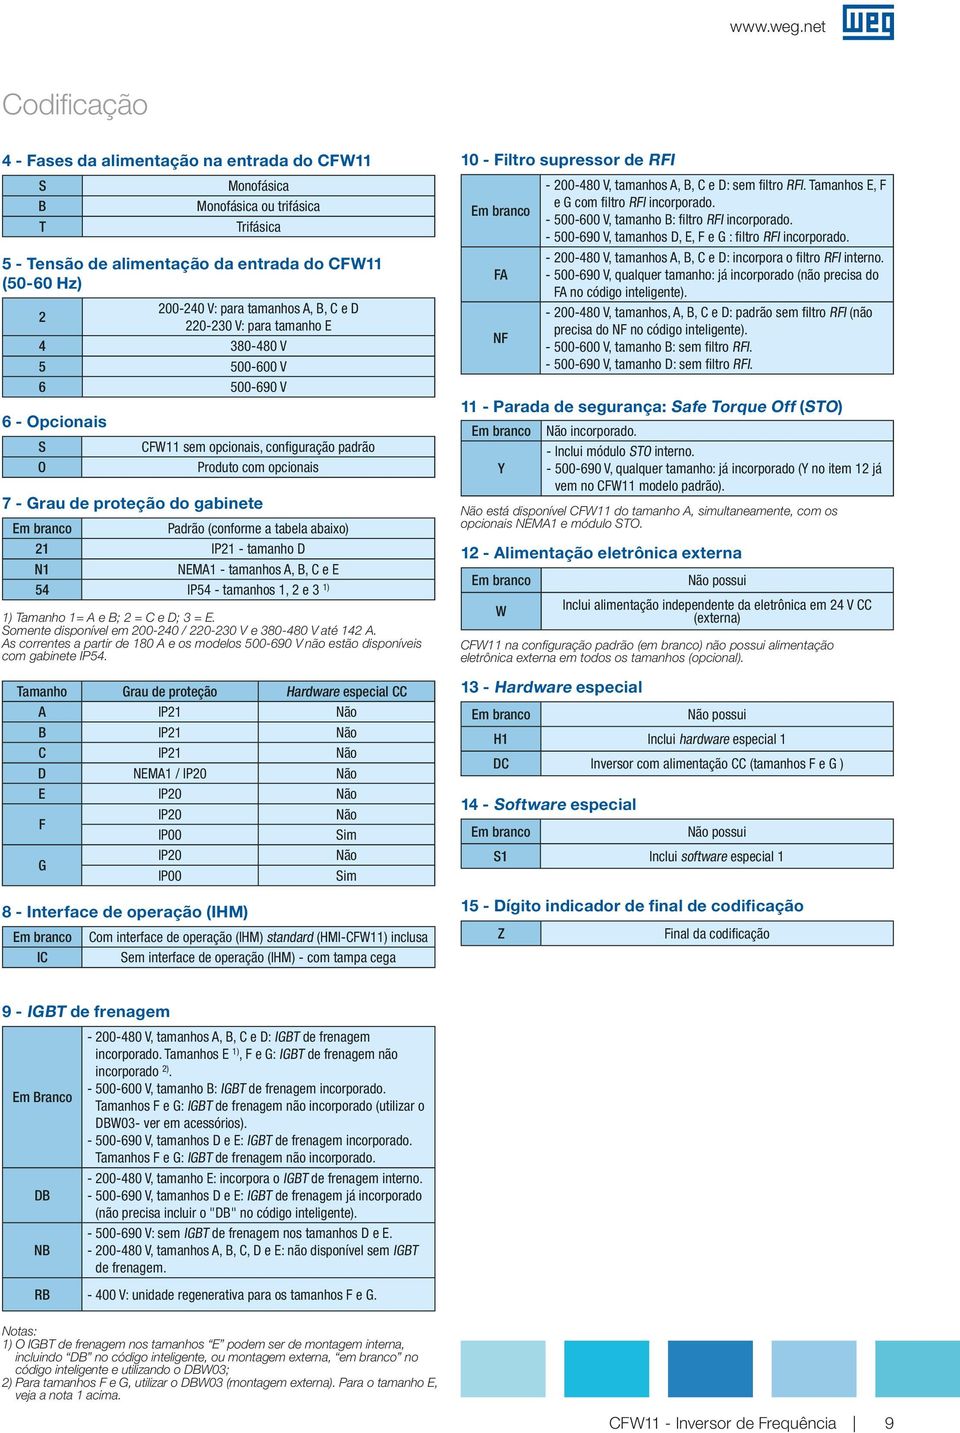 C e D 030 V: para tamanho E 4 380480 V 5 500600 V 6 500690 V S O CFW sem opcionais, confiuração padrão Produto com opcionais 7 Grau de proteção do abinete Em branco Padrão (conforme a tabela abaixo)